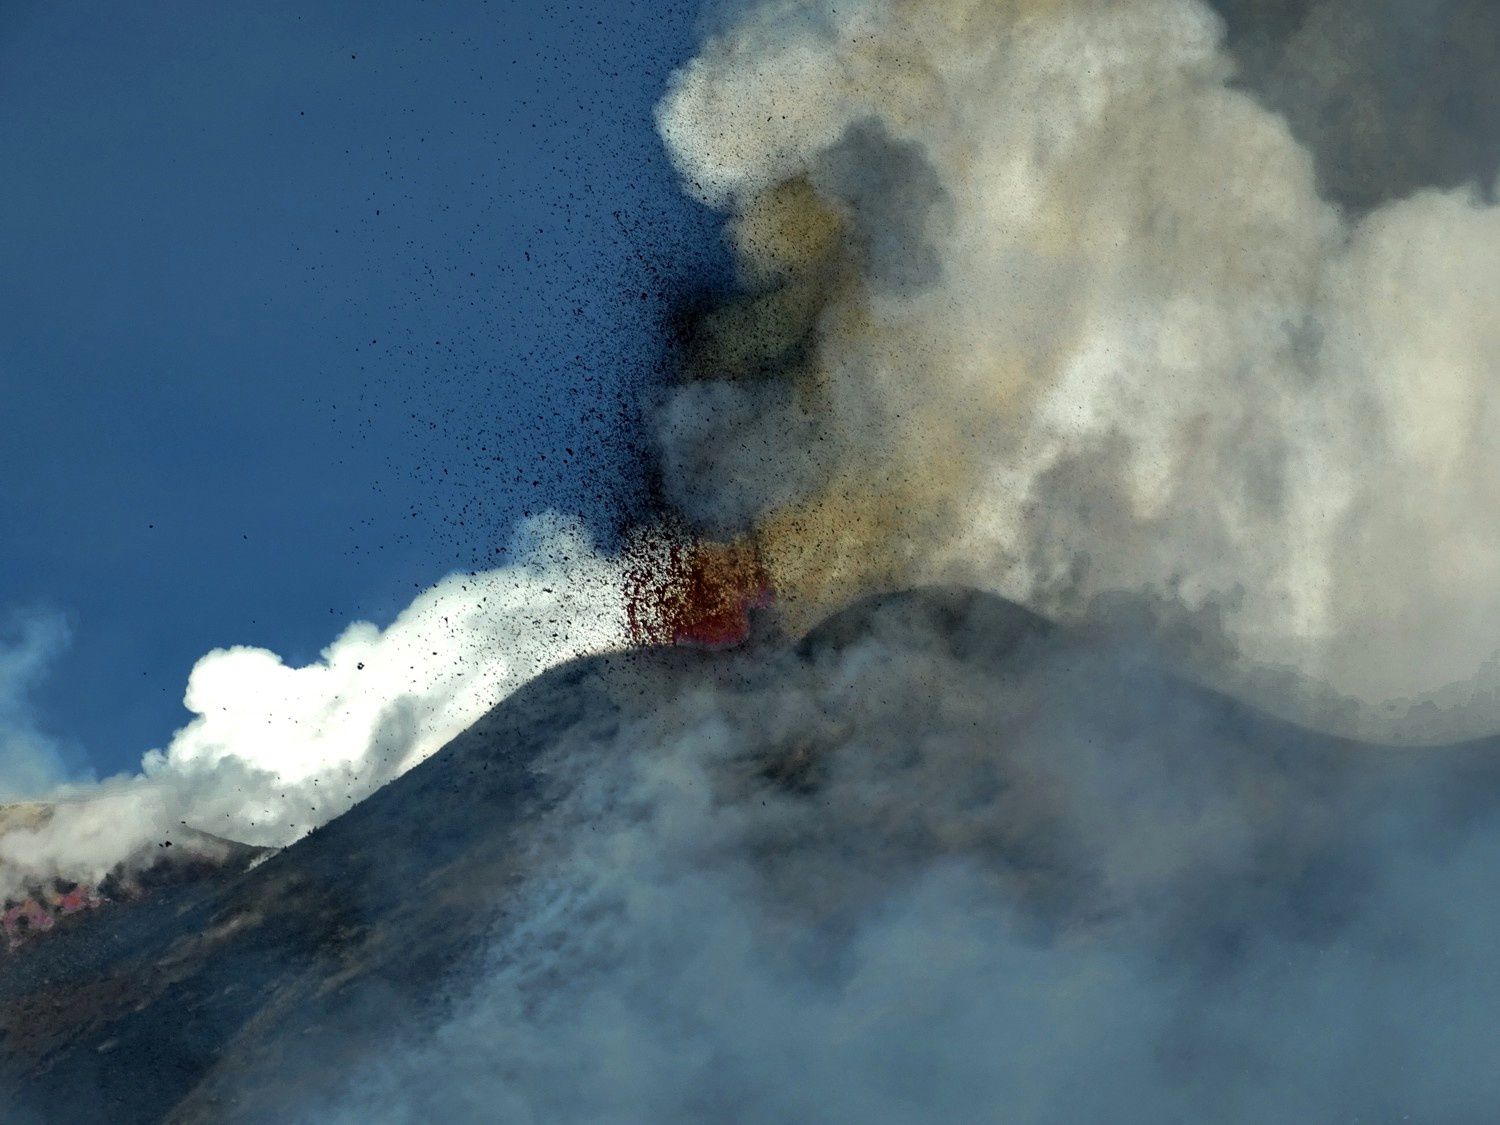 Etna - activité matinale le 15.03.2017 - photos de Boris Behncke prise à 1 km au sud du cône